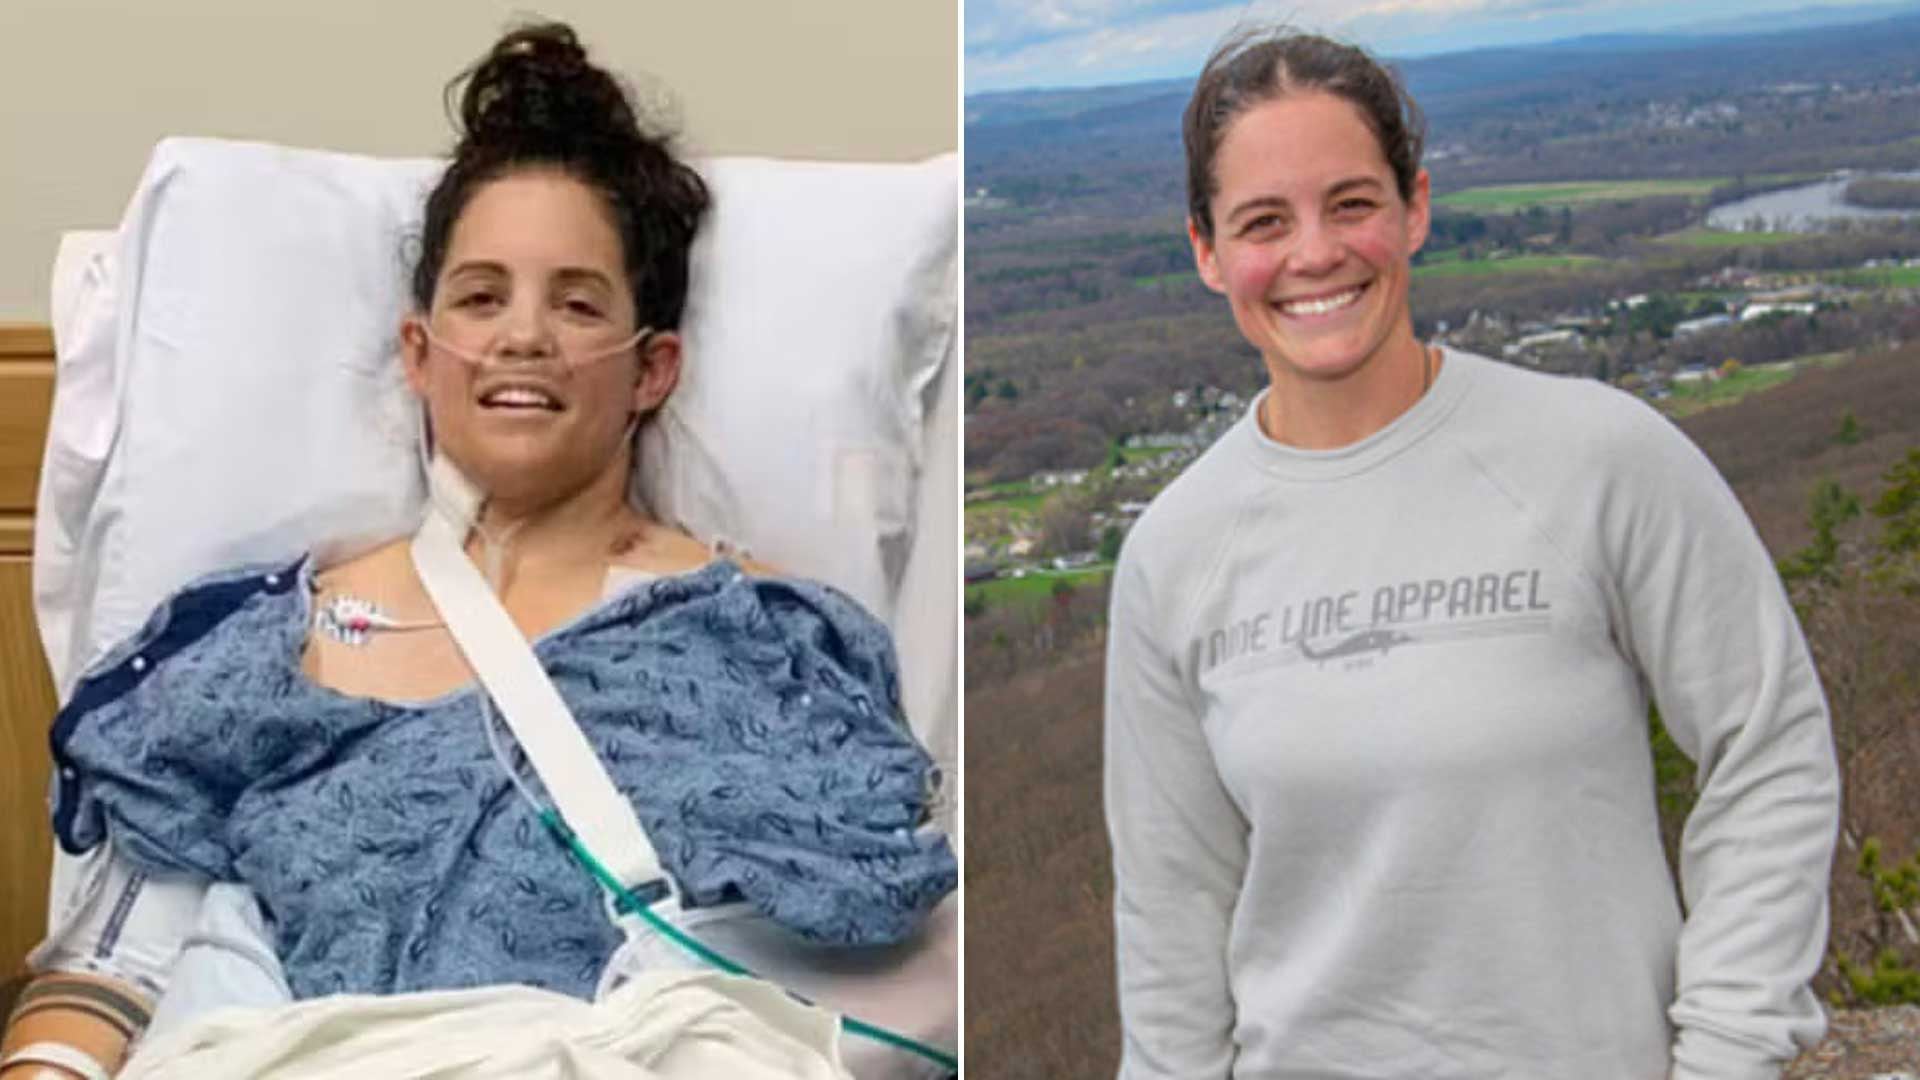 Ashley Piccirilli sobrevivió a un desmoronamiento en una obra en Massachusetts, quedando enterrada viva. Tras una ardua recuperación, cumple su sueño de ser piloto.